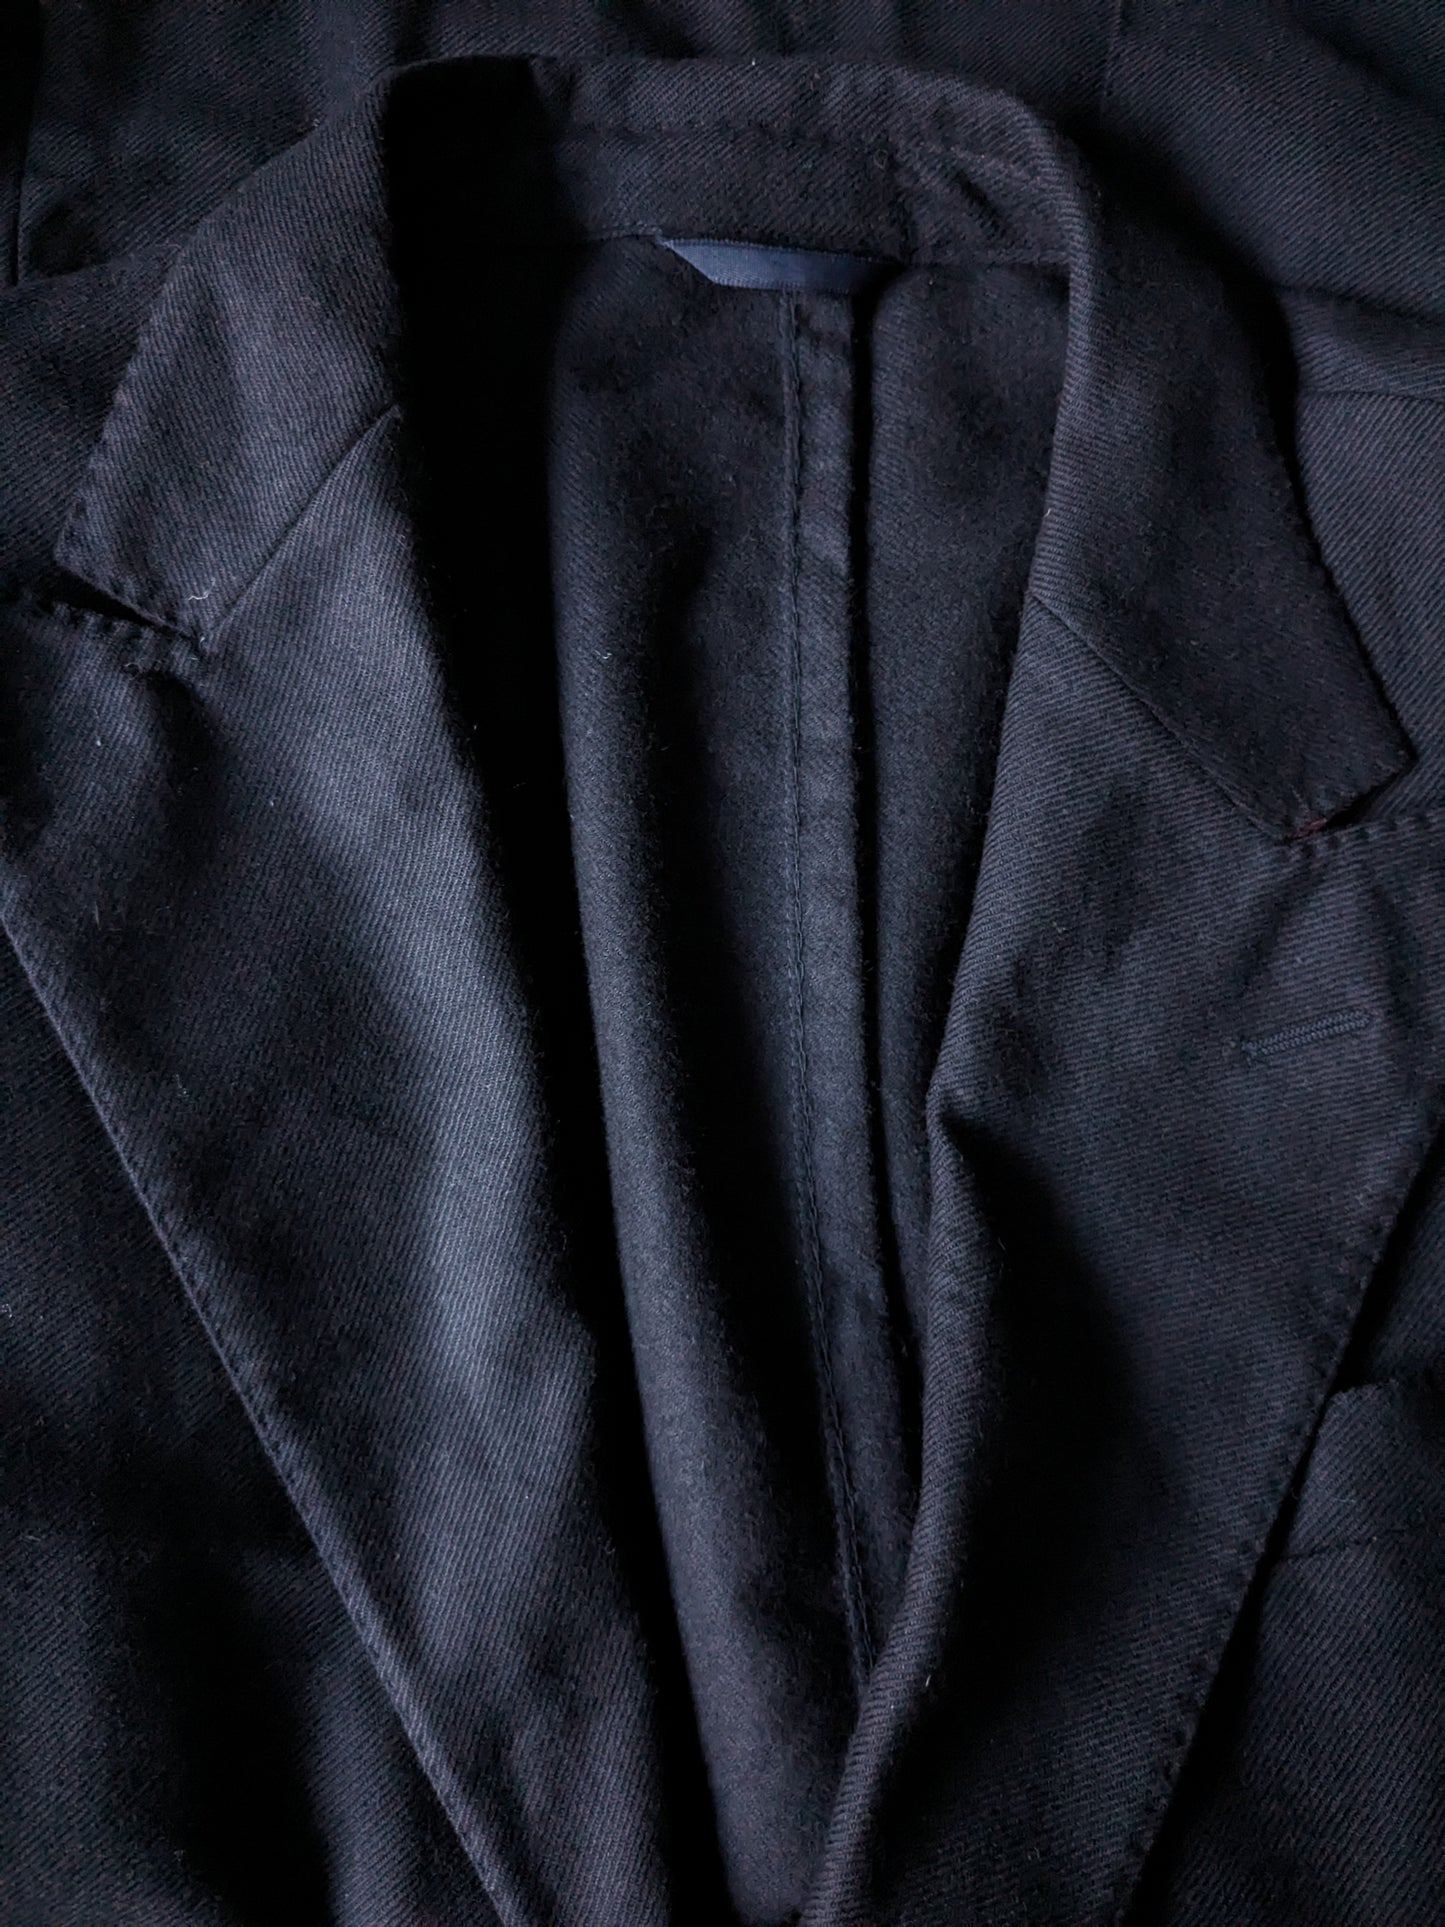 Bella giacca estiva Burlington. Blu scuro. Dimensione 52 / L.